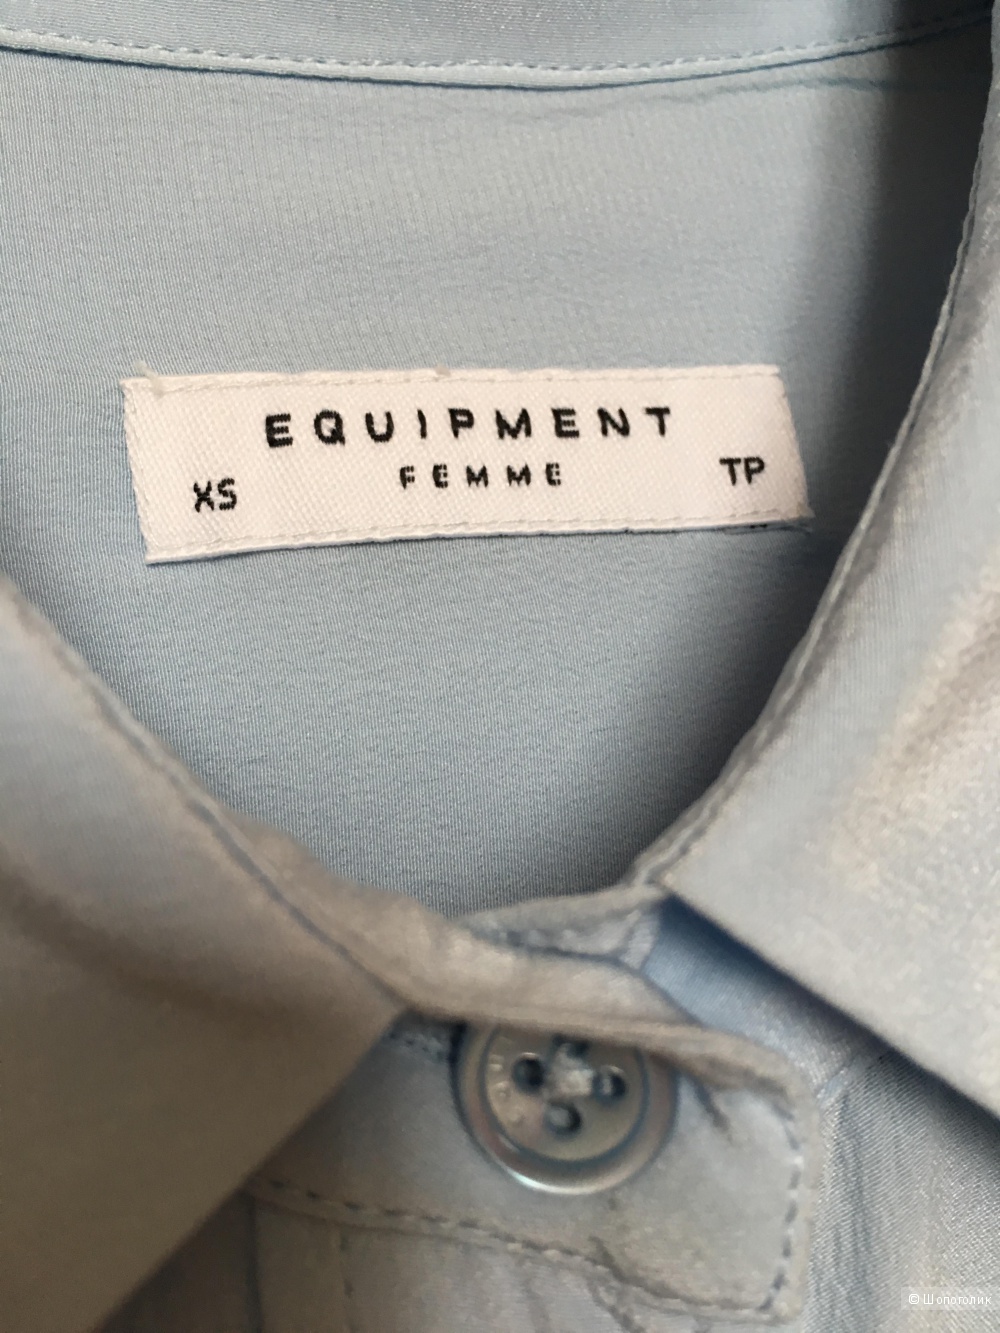 Шёлковая рубашка Equipment с длинными рукавами, размер XS